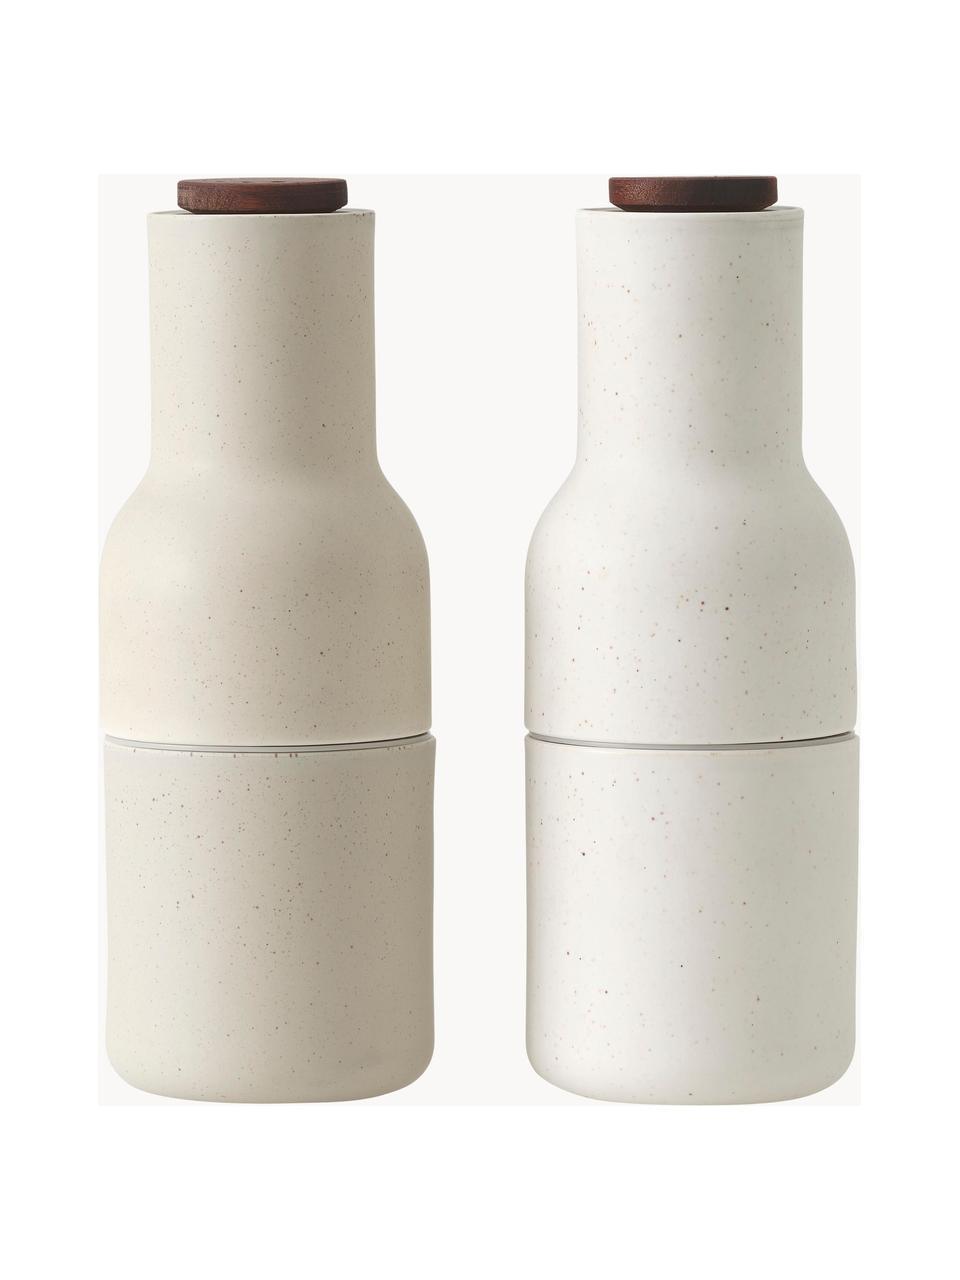 Designer zout- en pepermolen van keramiek Bottle Grinder met walnootdeksel, set van 2, Frame: keramiek, Deksel: walnootkleurig, Gebroken wit, lichtbeige, Ø 8 x H 21 cm